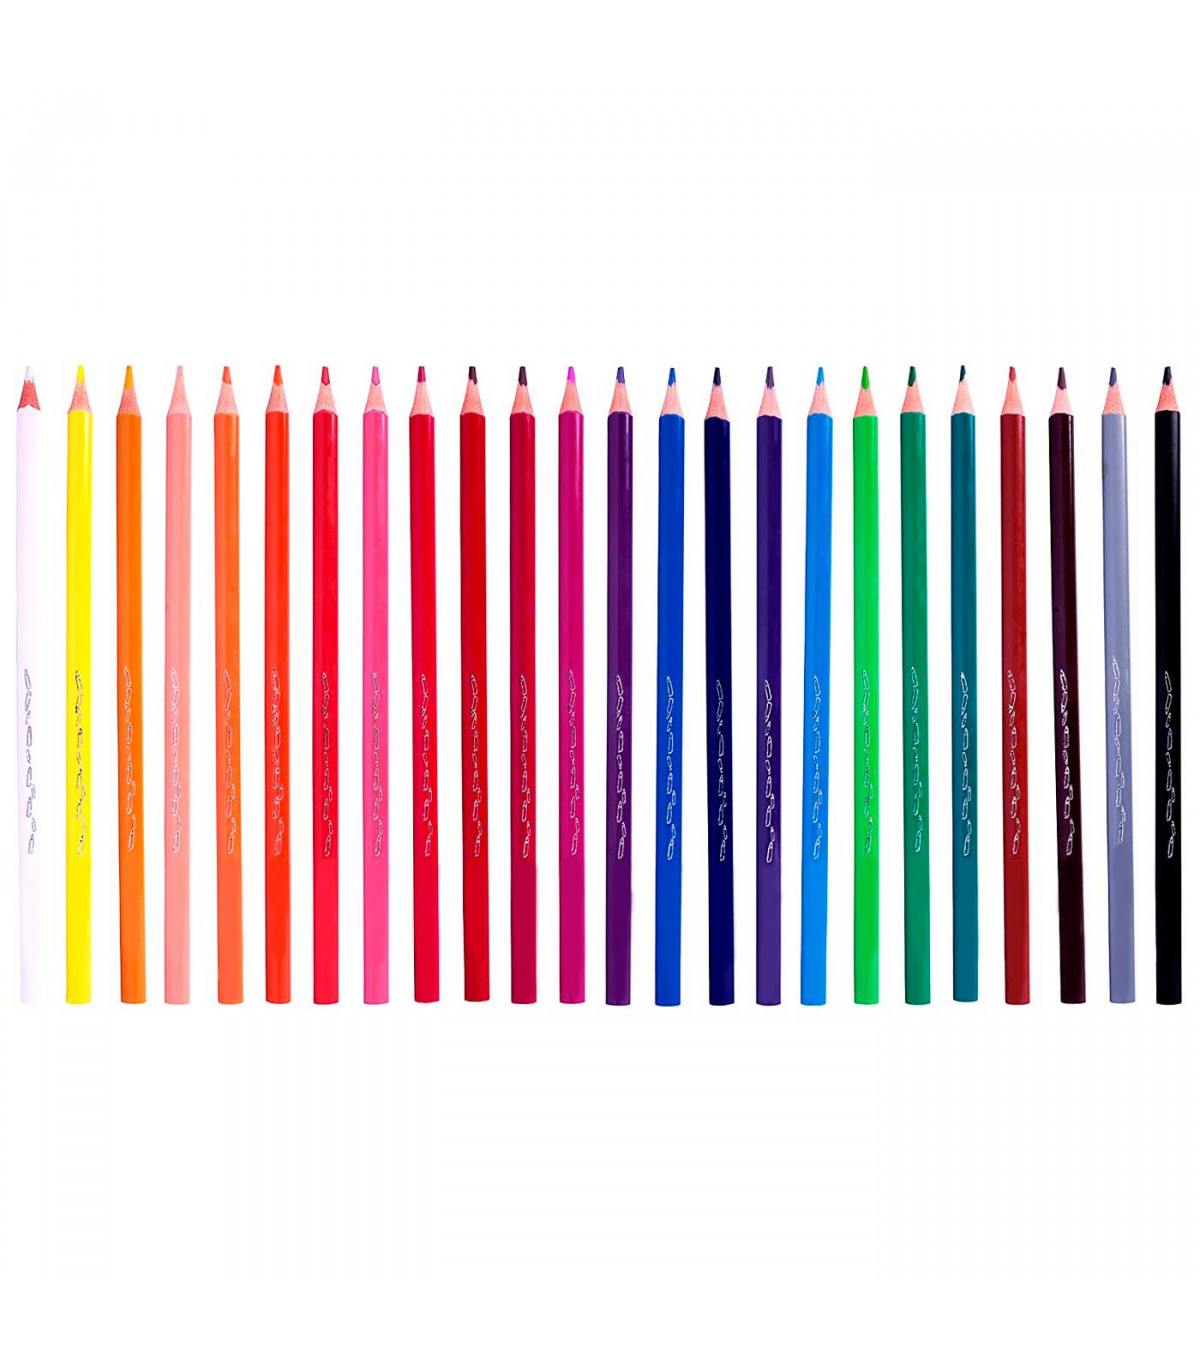 Material dibujo - lapices de color